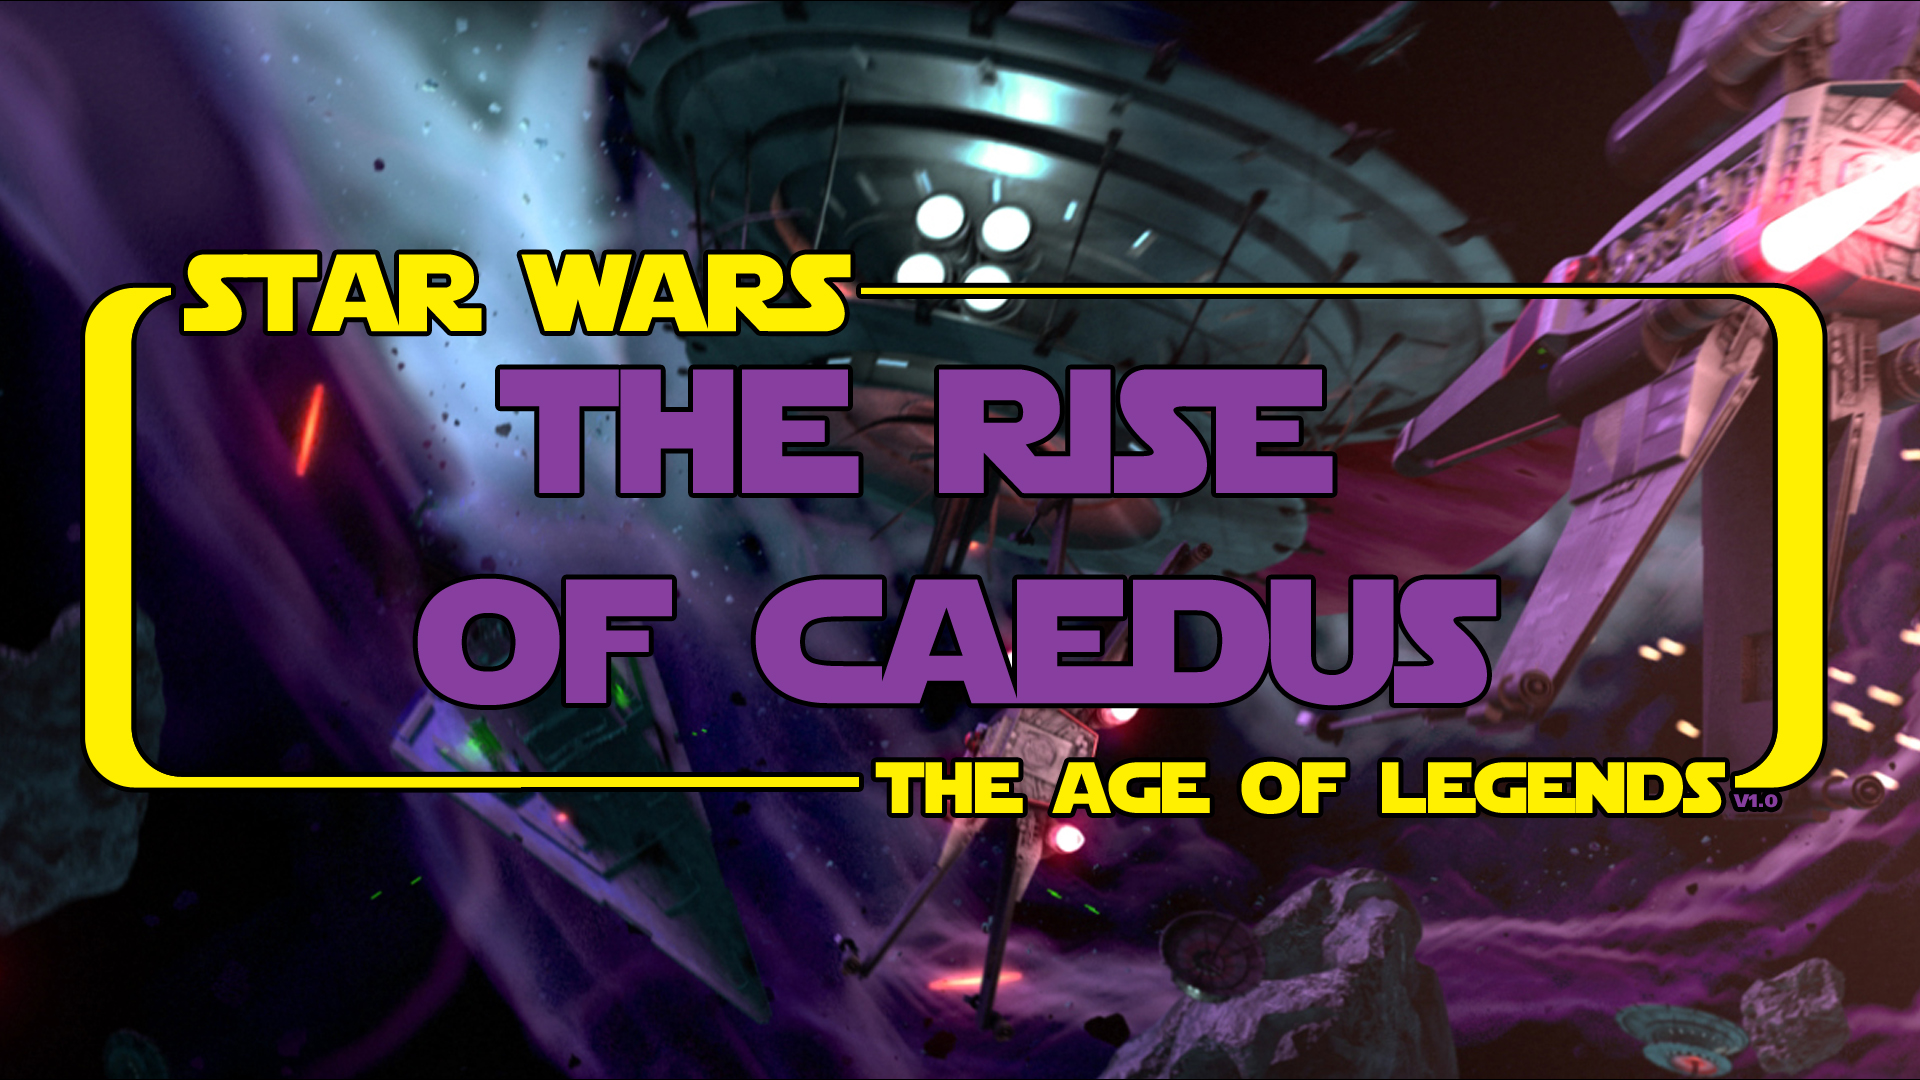 The Rise of Caedus